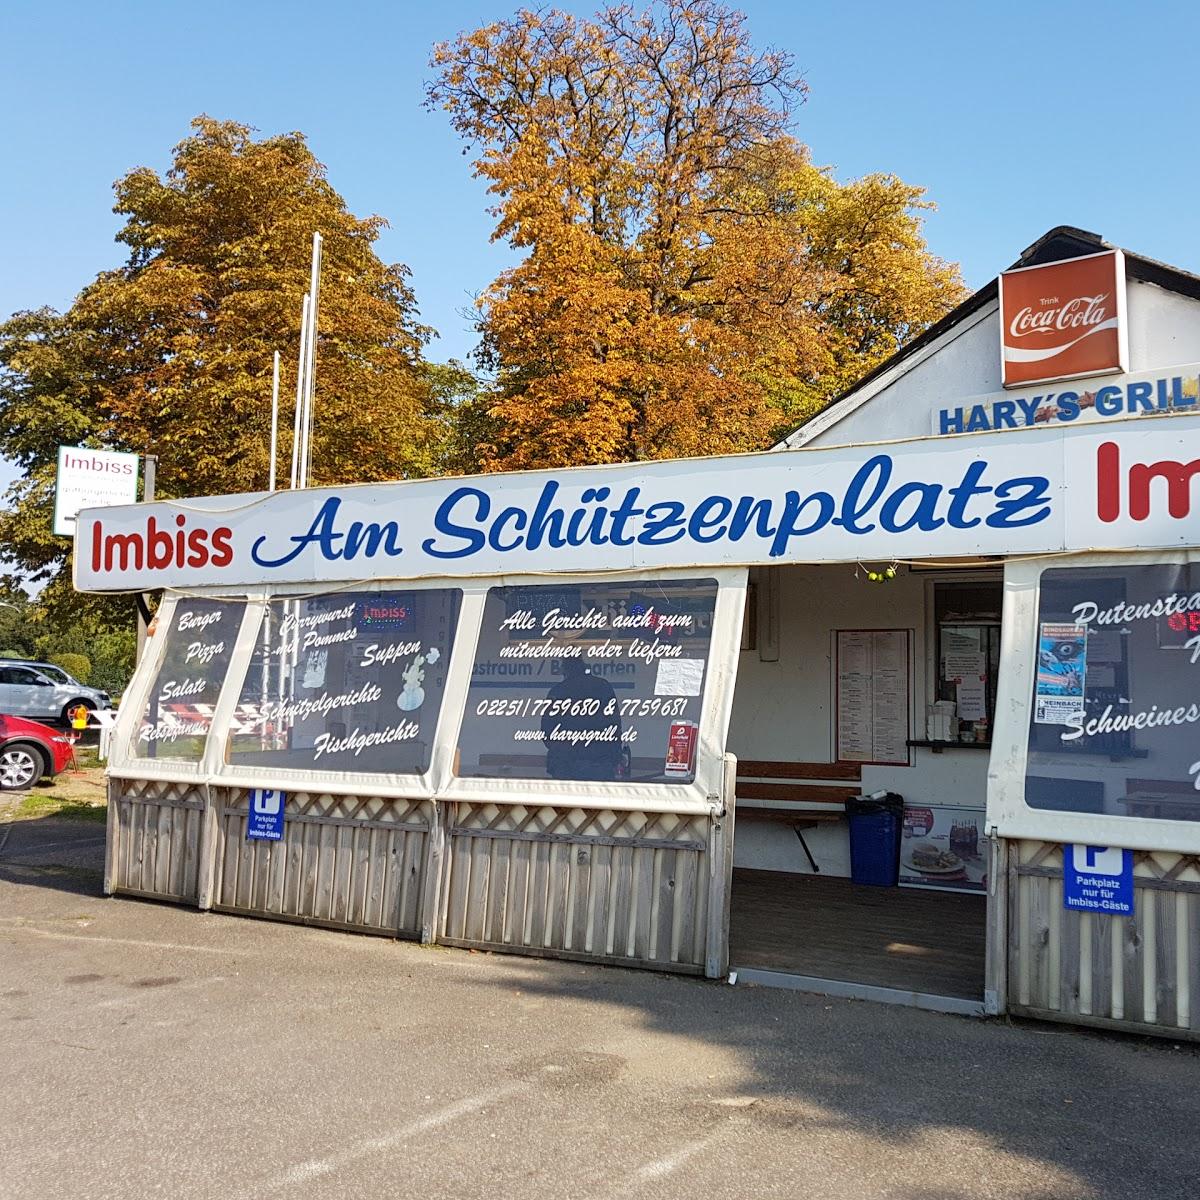 Restaurant "Harys Grill Imbiss am Schützenplatz" in Euskirchen